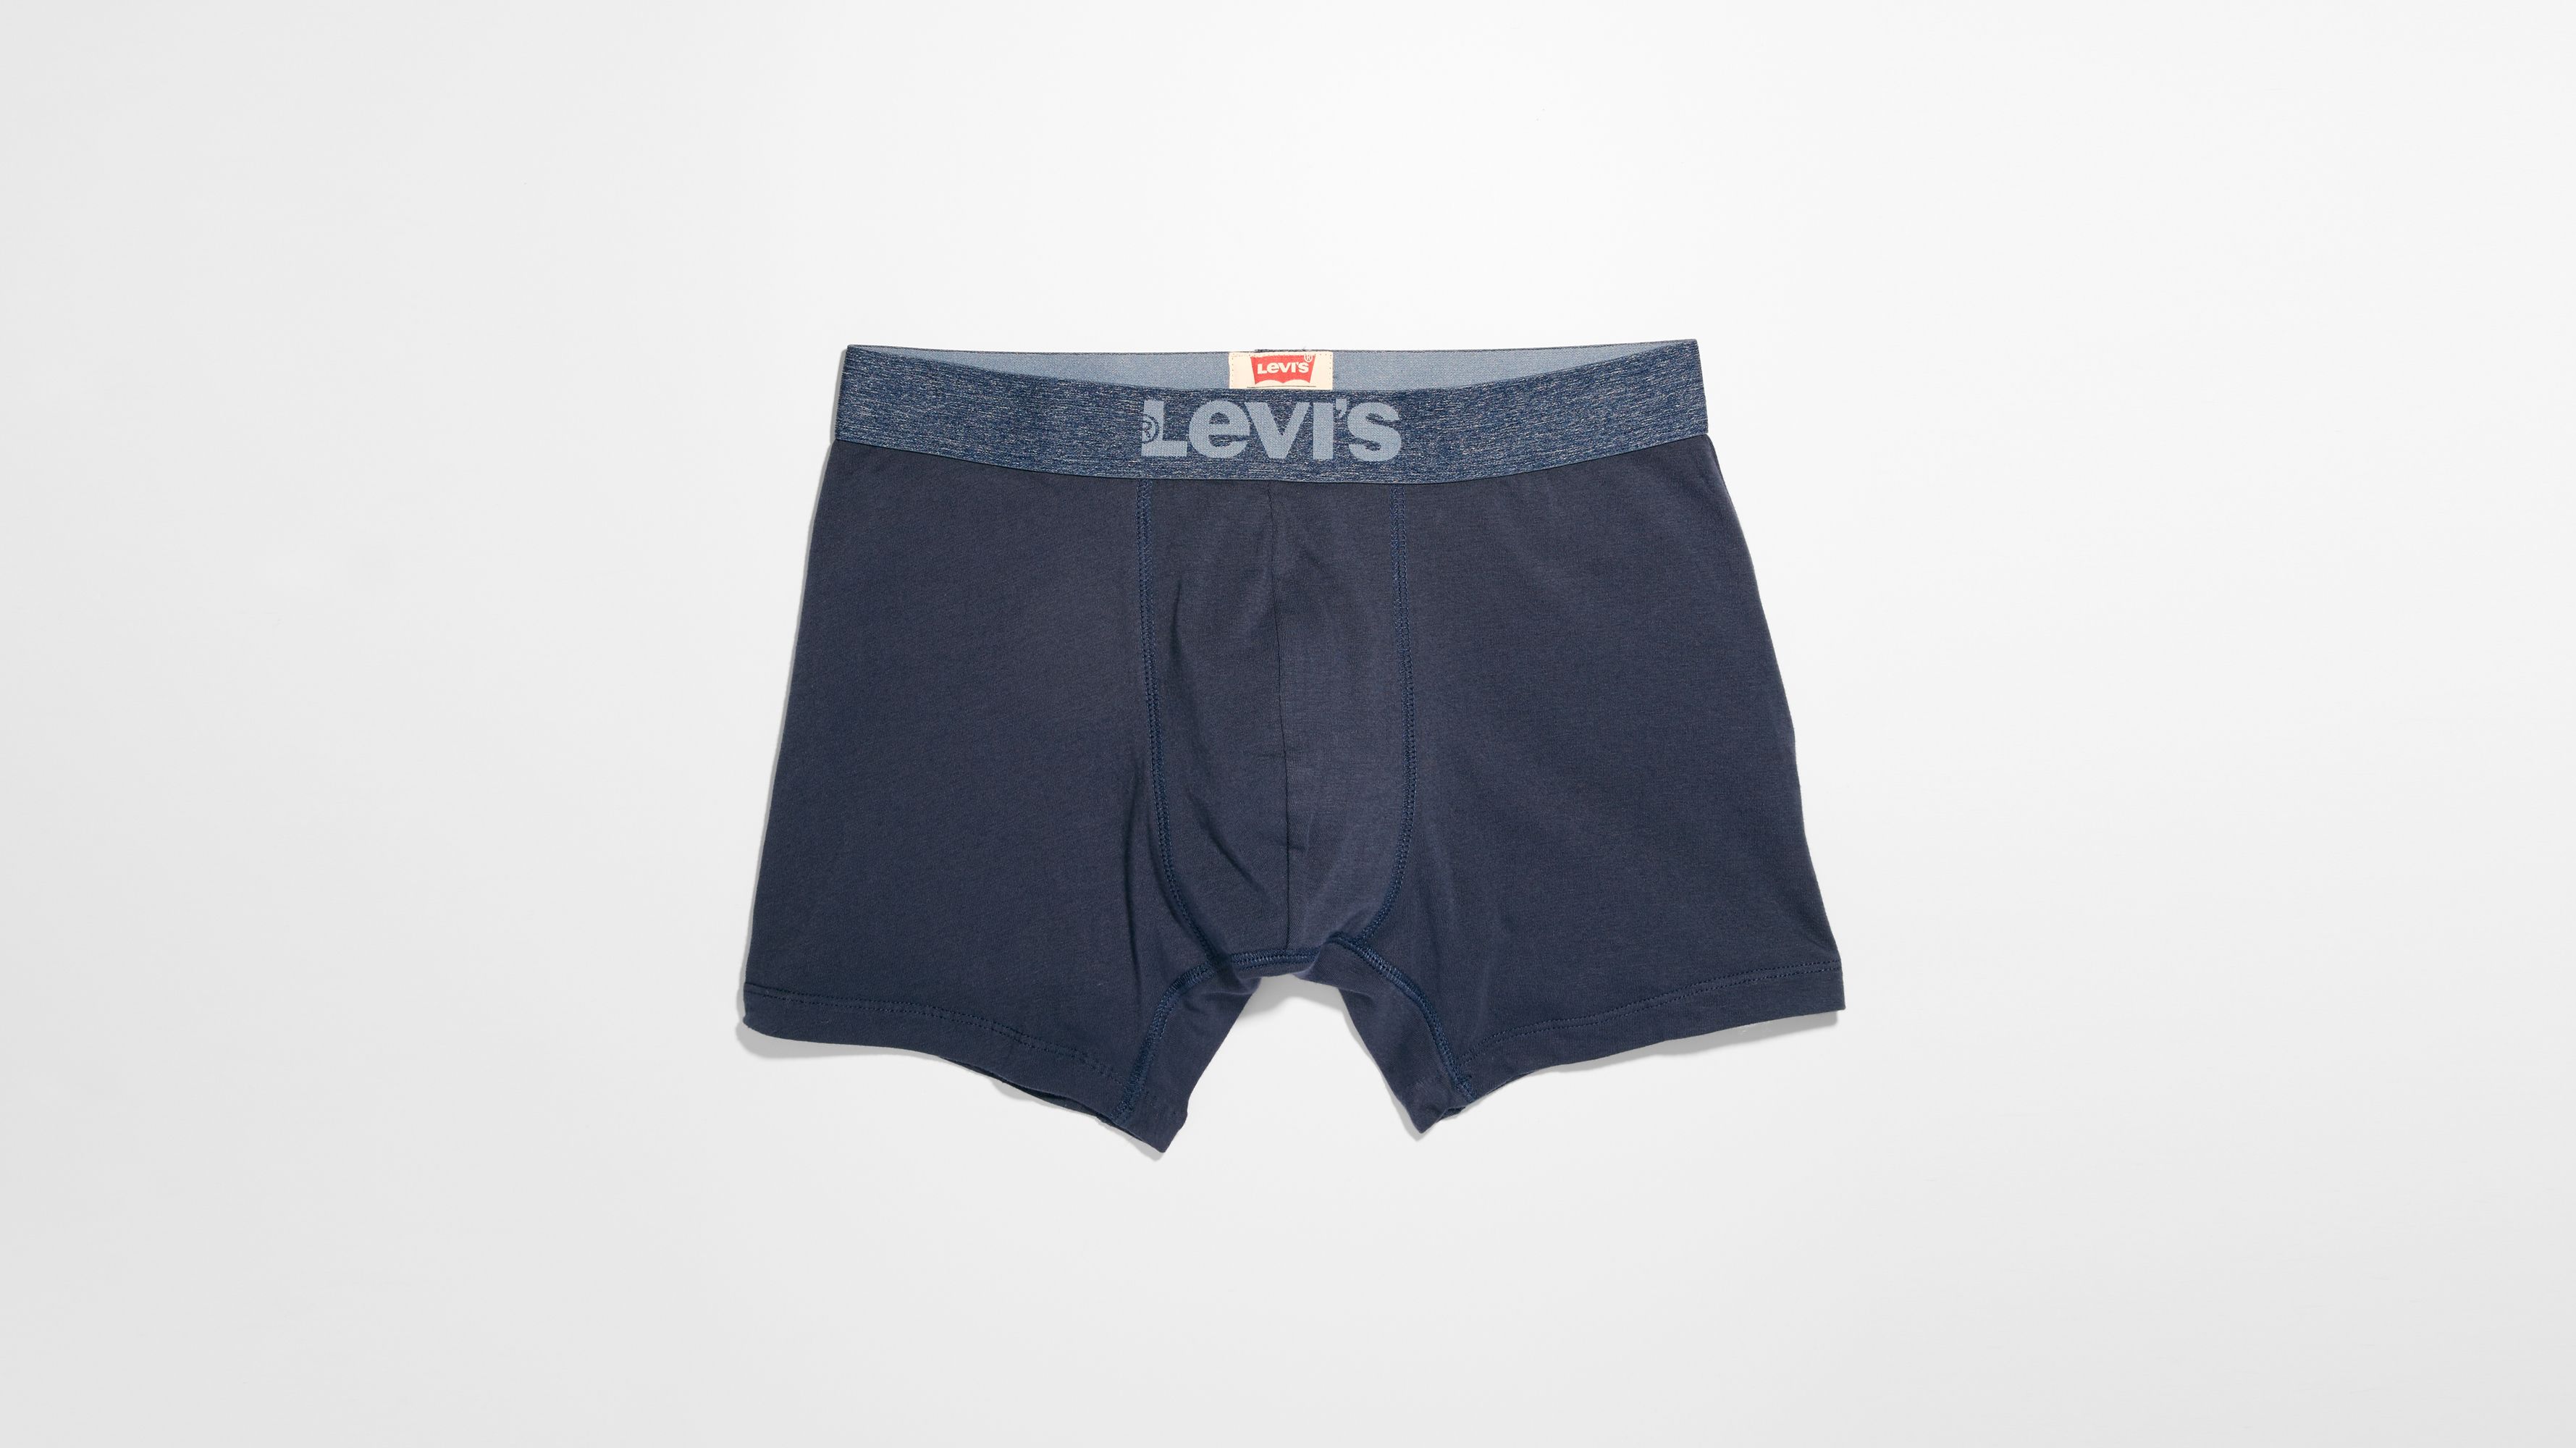 levis innerwear company